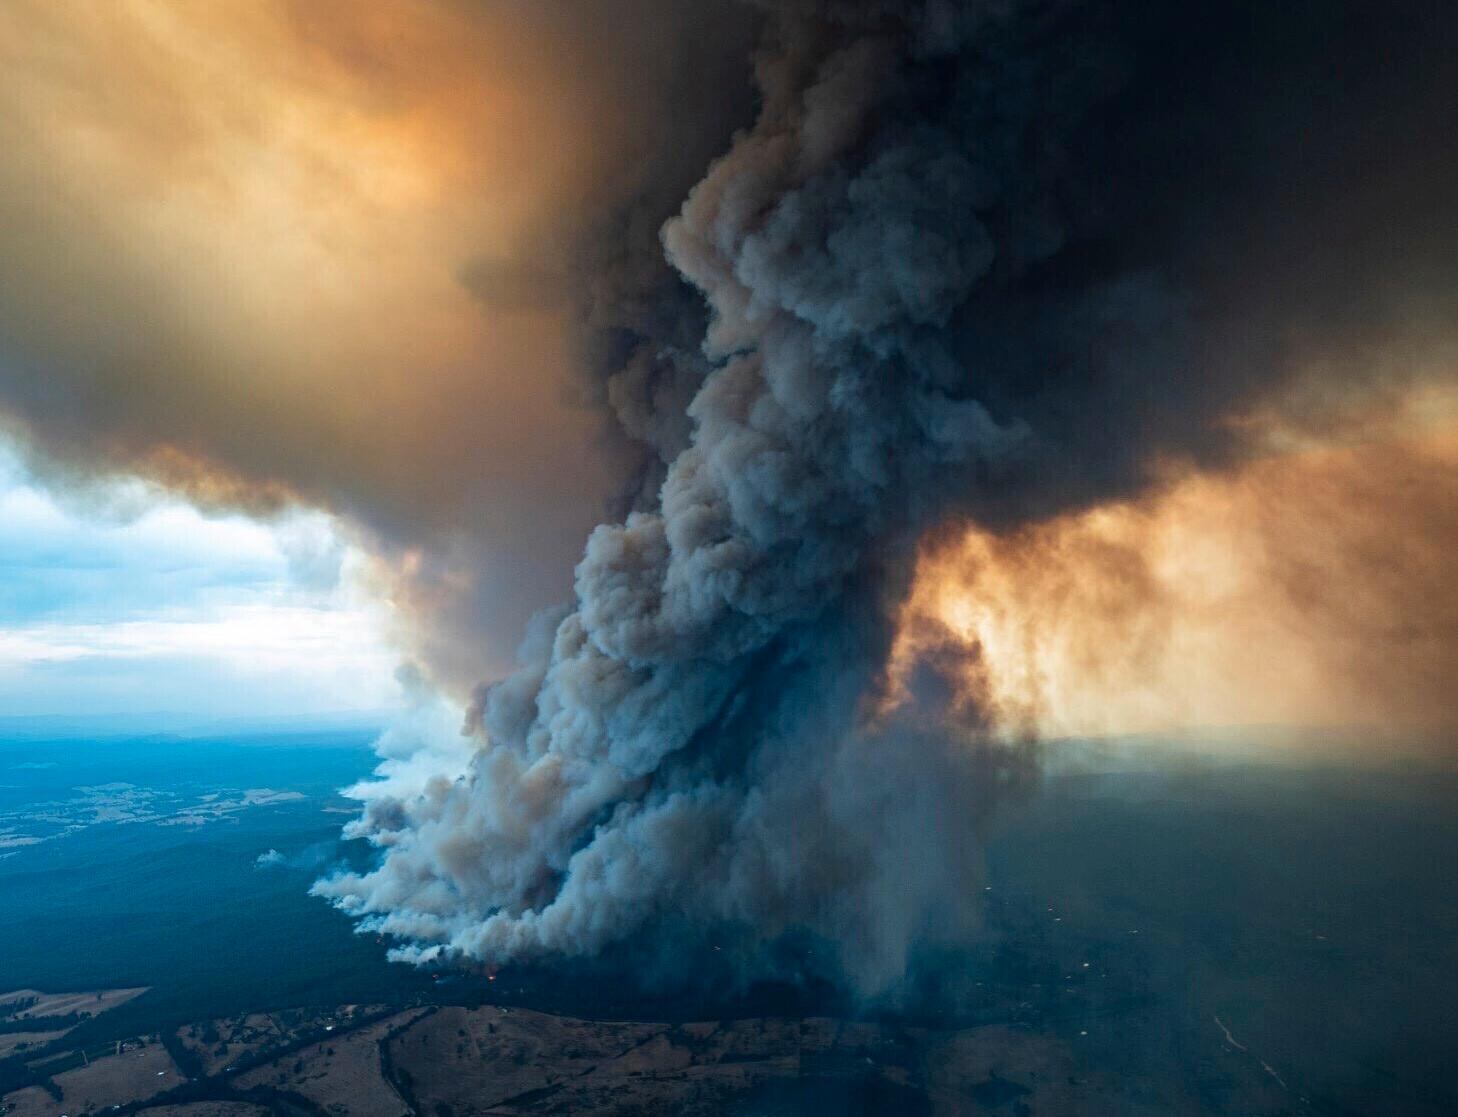  Australien har härjats av extrembränder, som bedöms vara en följd av det torrare och hetare klimatet. 